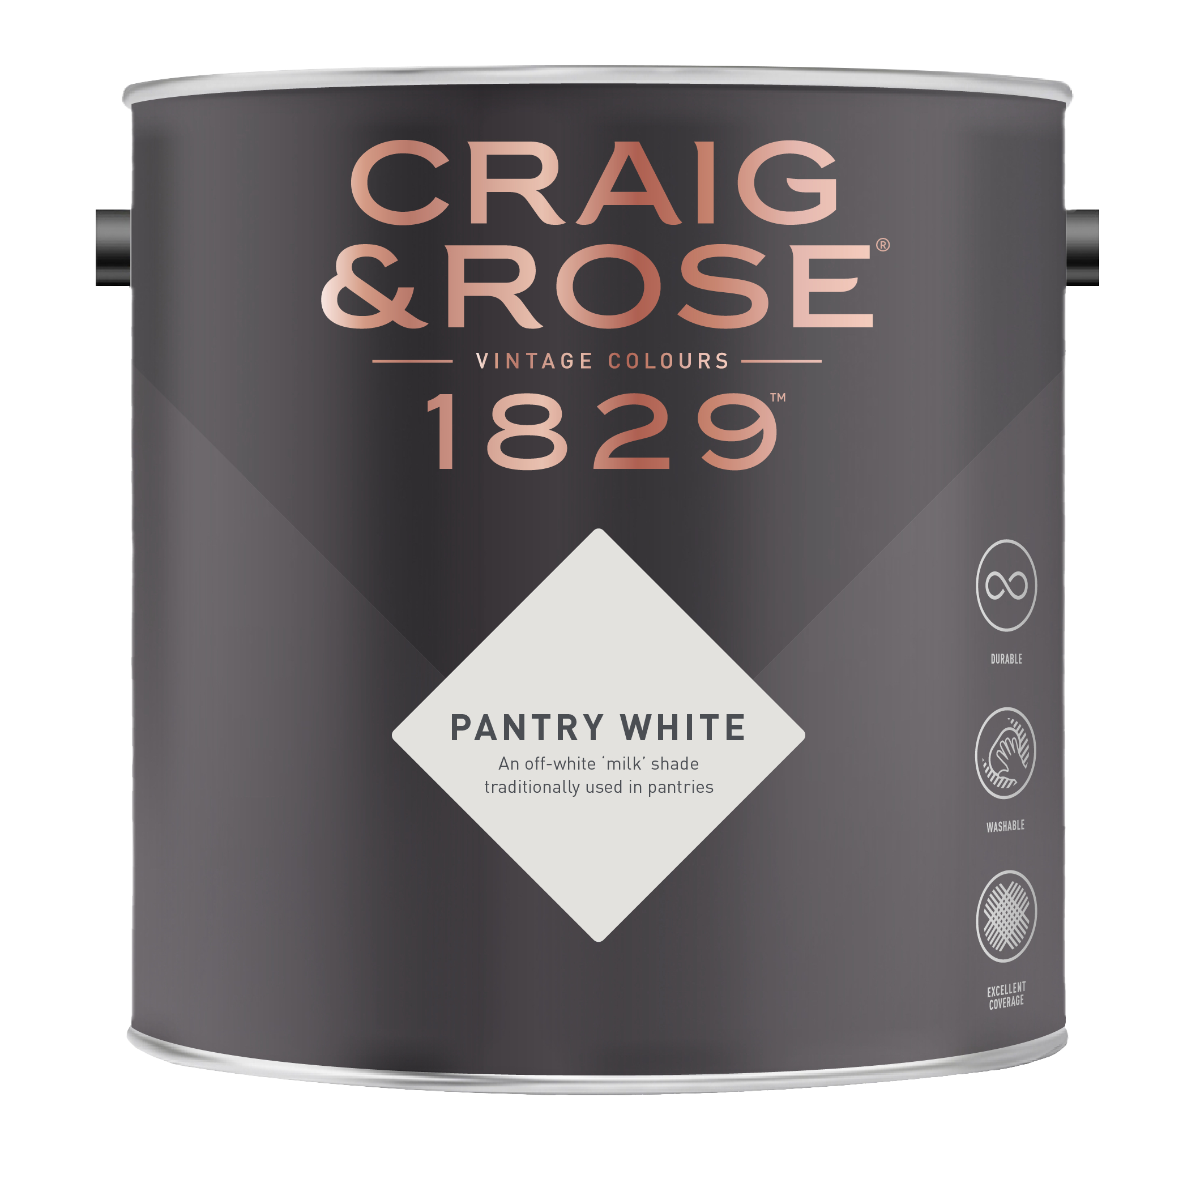 Craig & Rose 1829 Pantry White